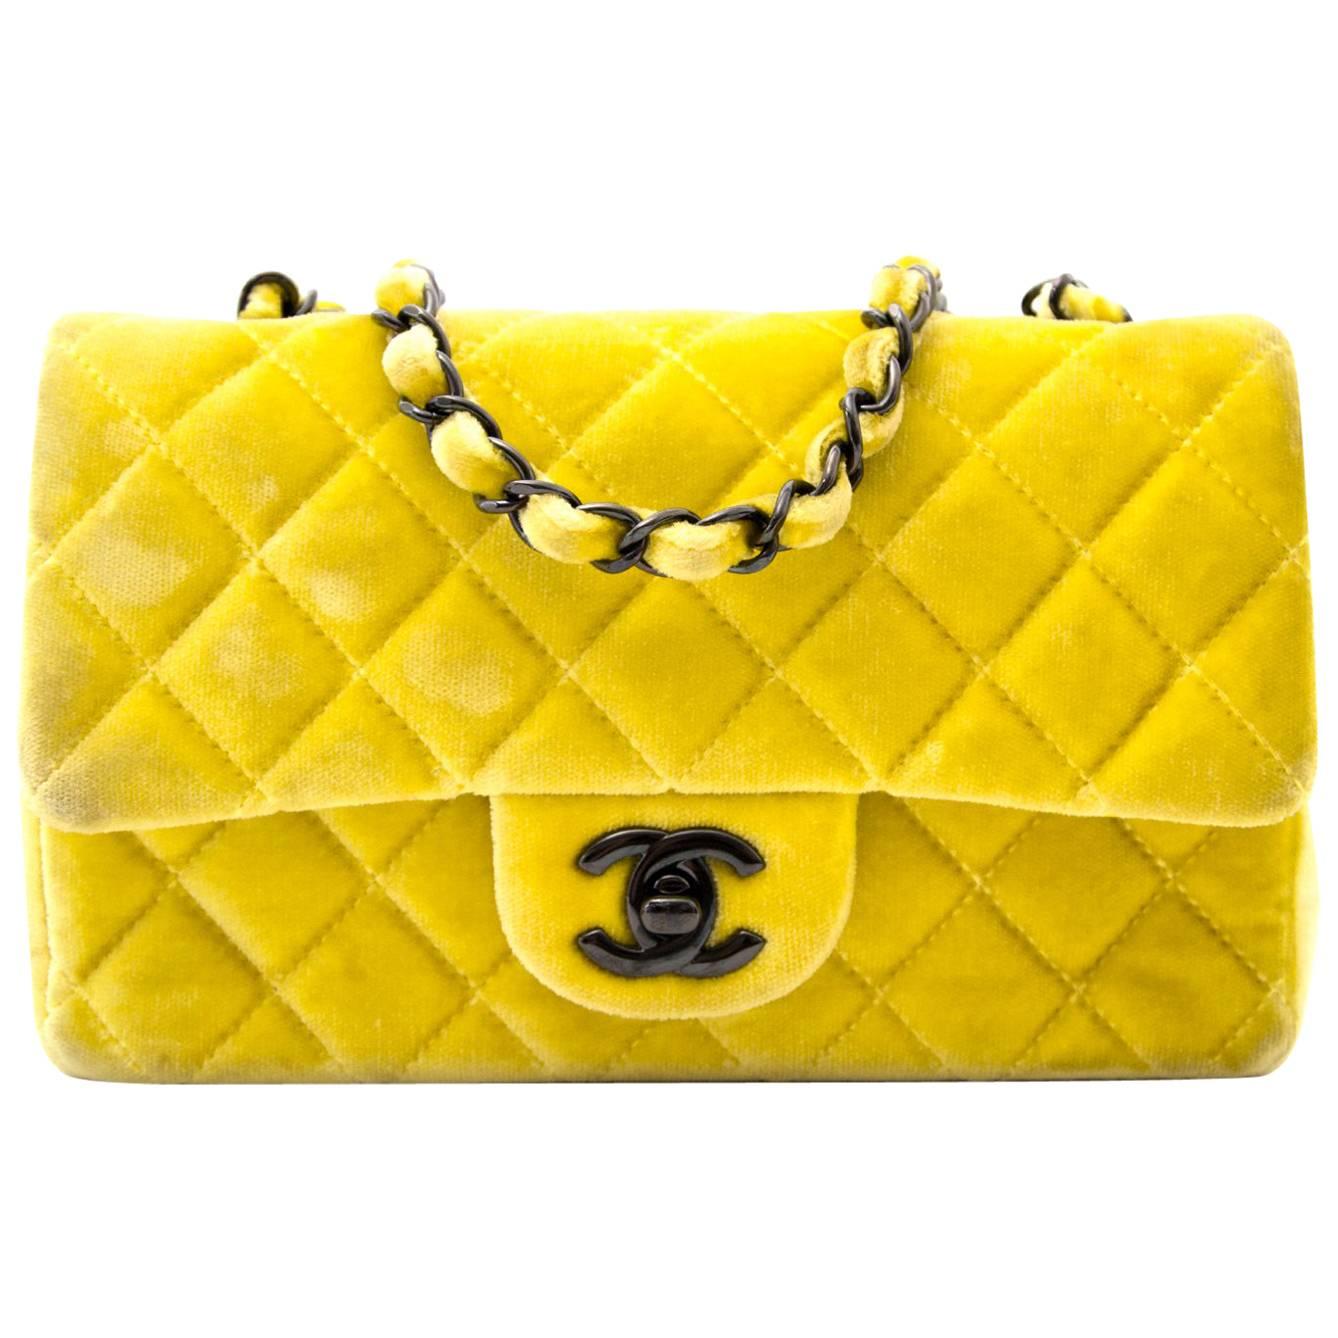 Chanel New Mini Yellow Velvet Flap Bag